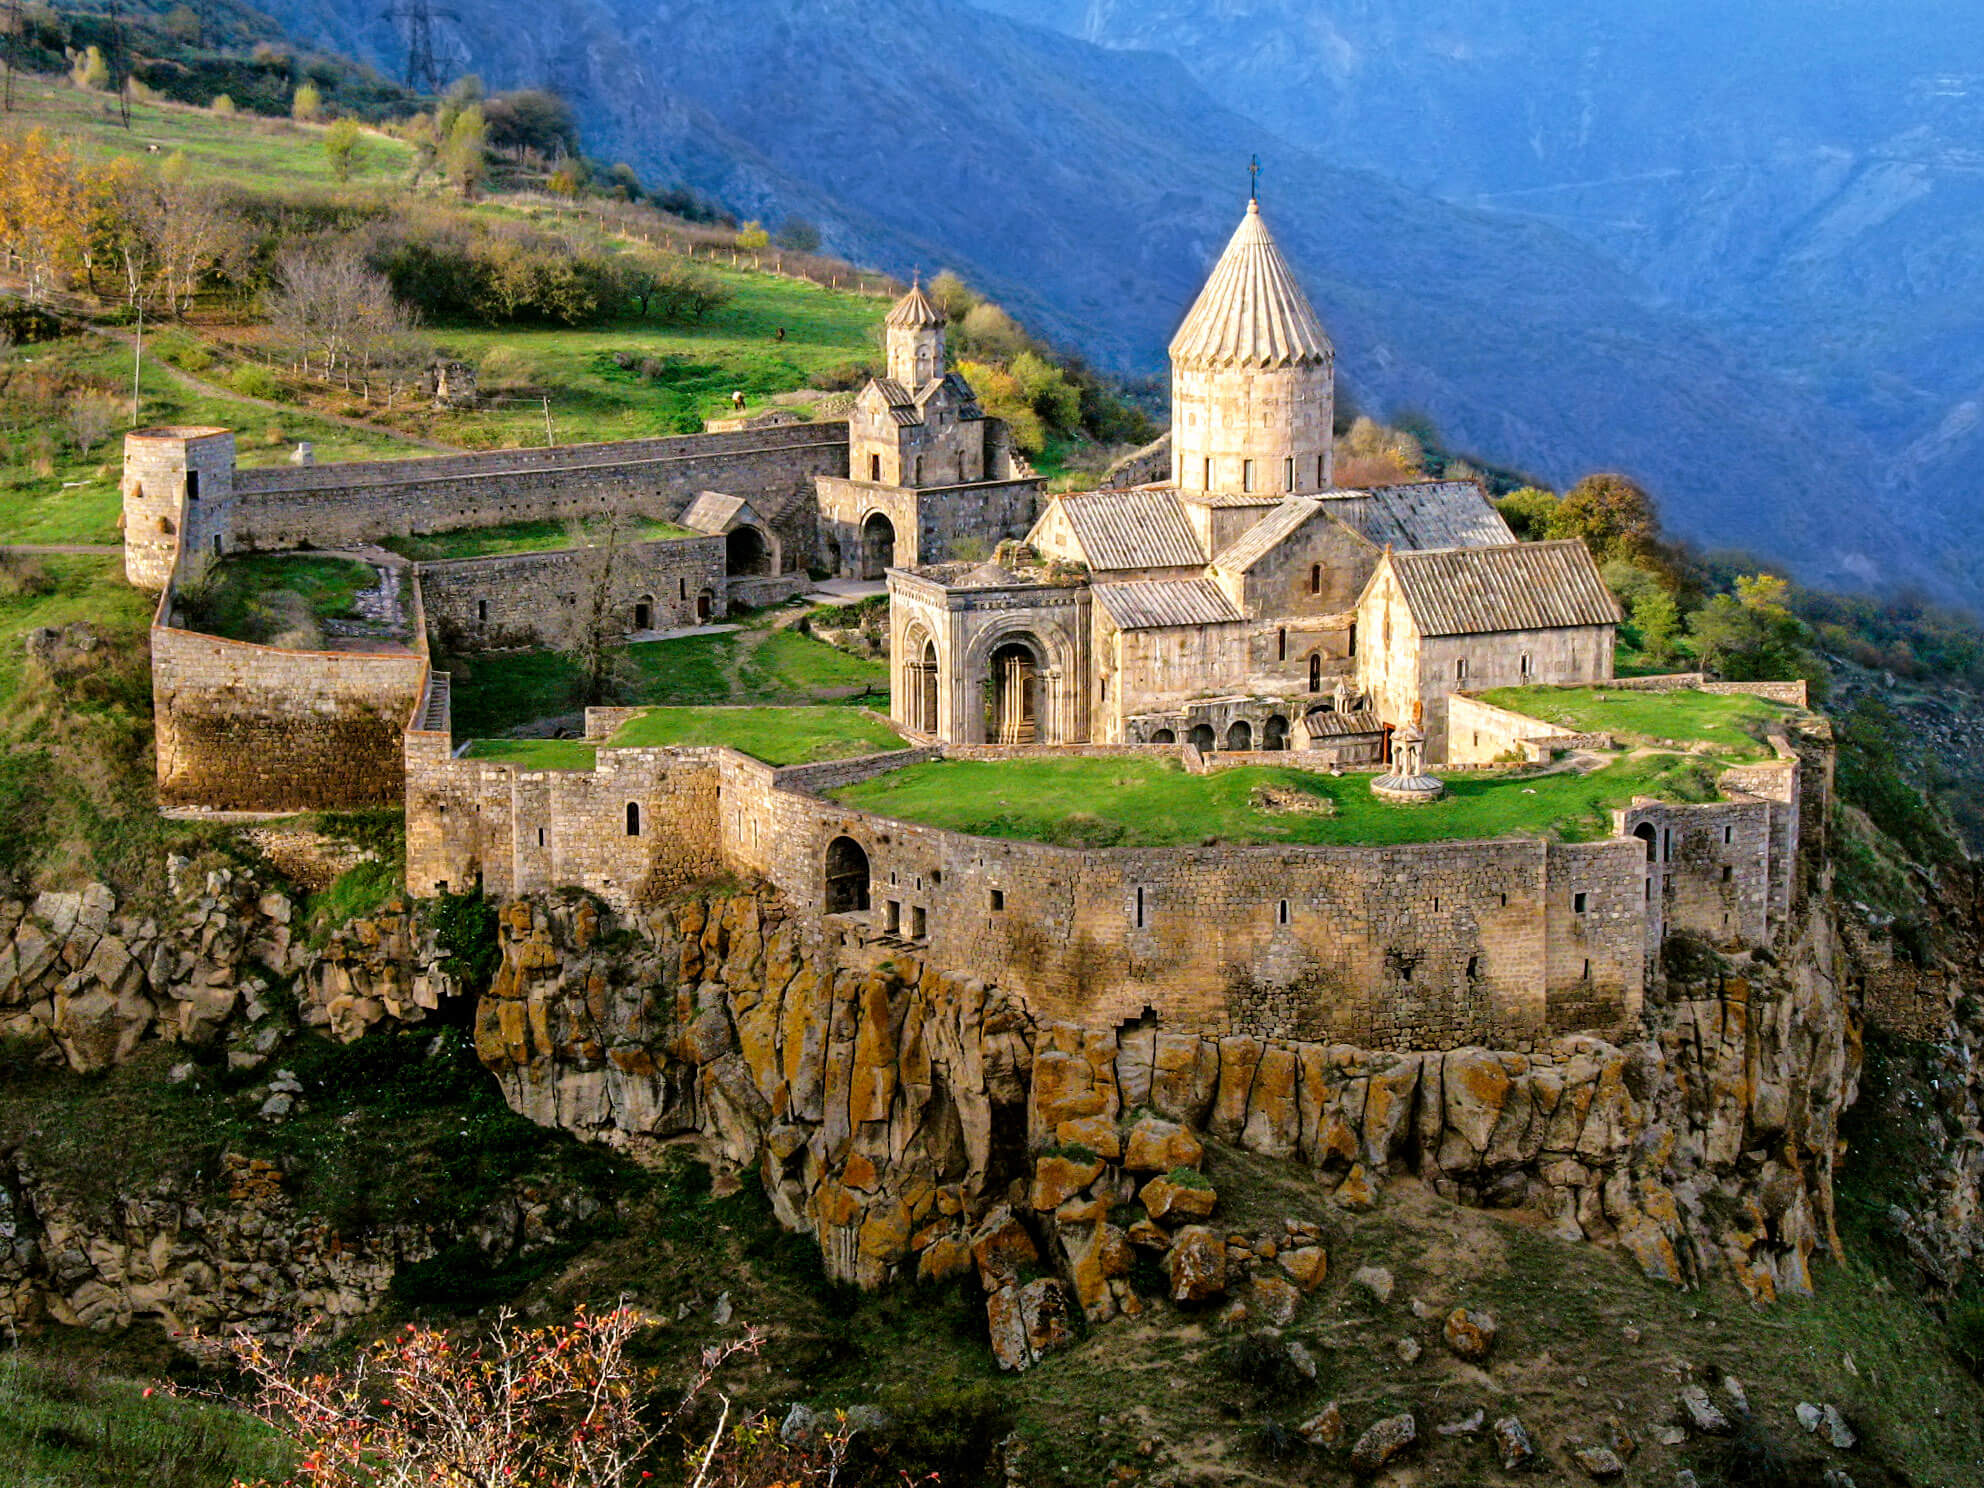 Ermenistan Rus turistlerin en çok gitmek istedikleri ülke listesinde